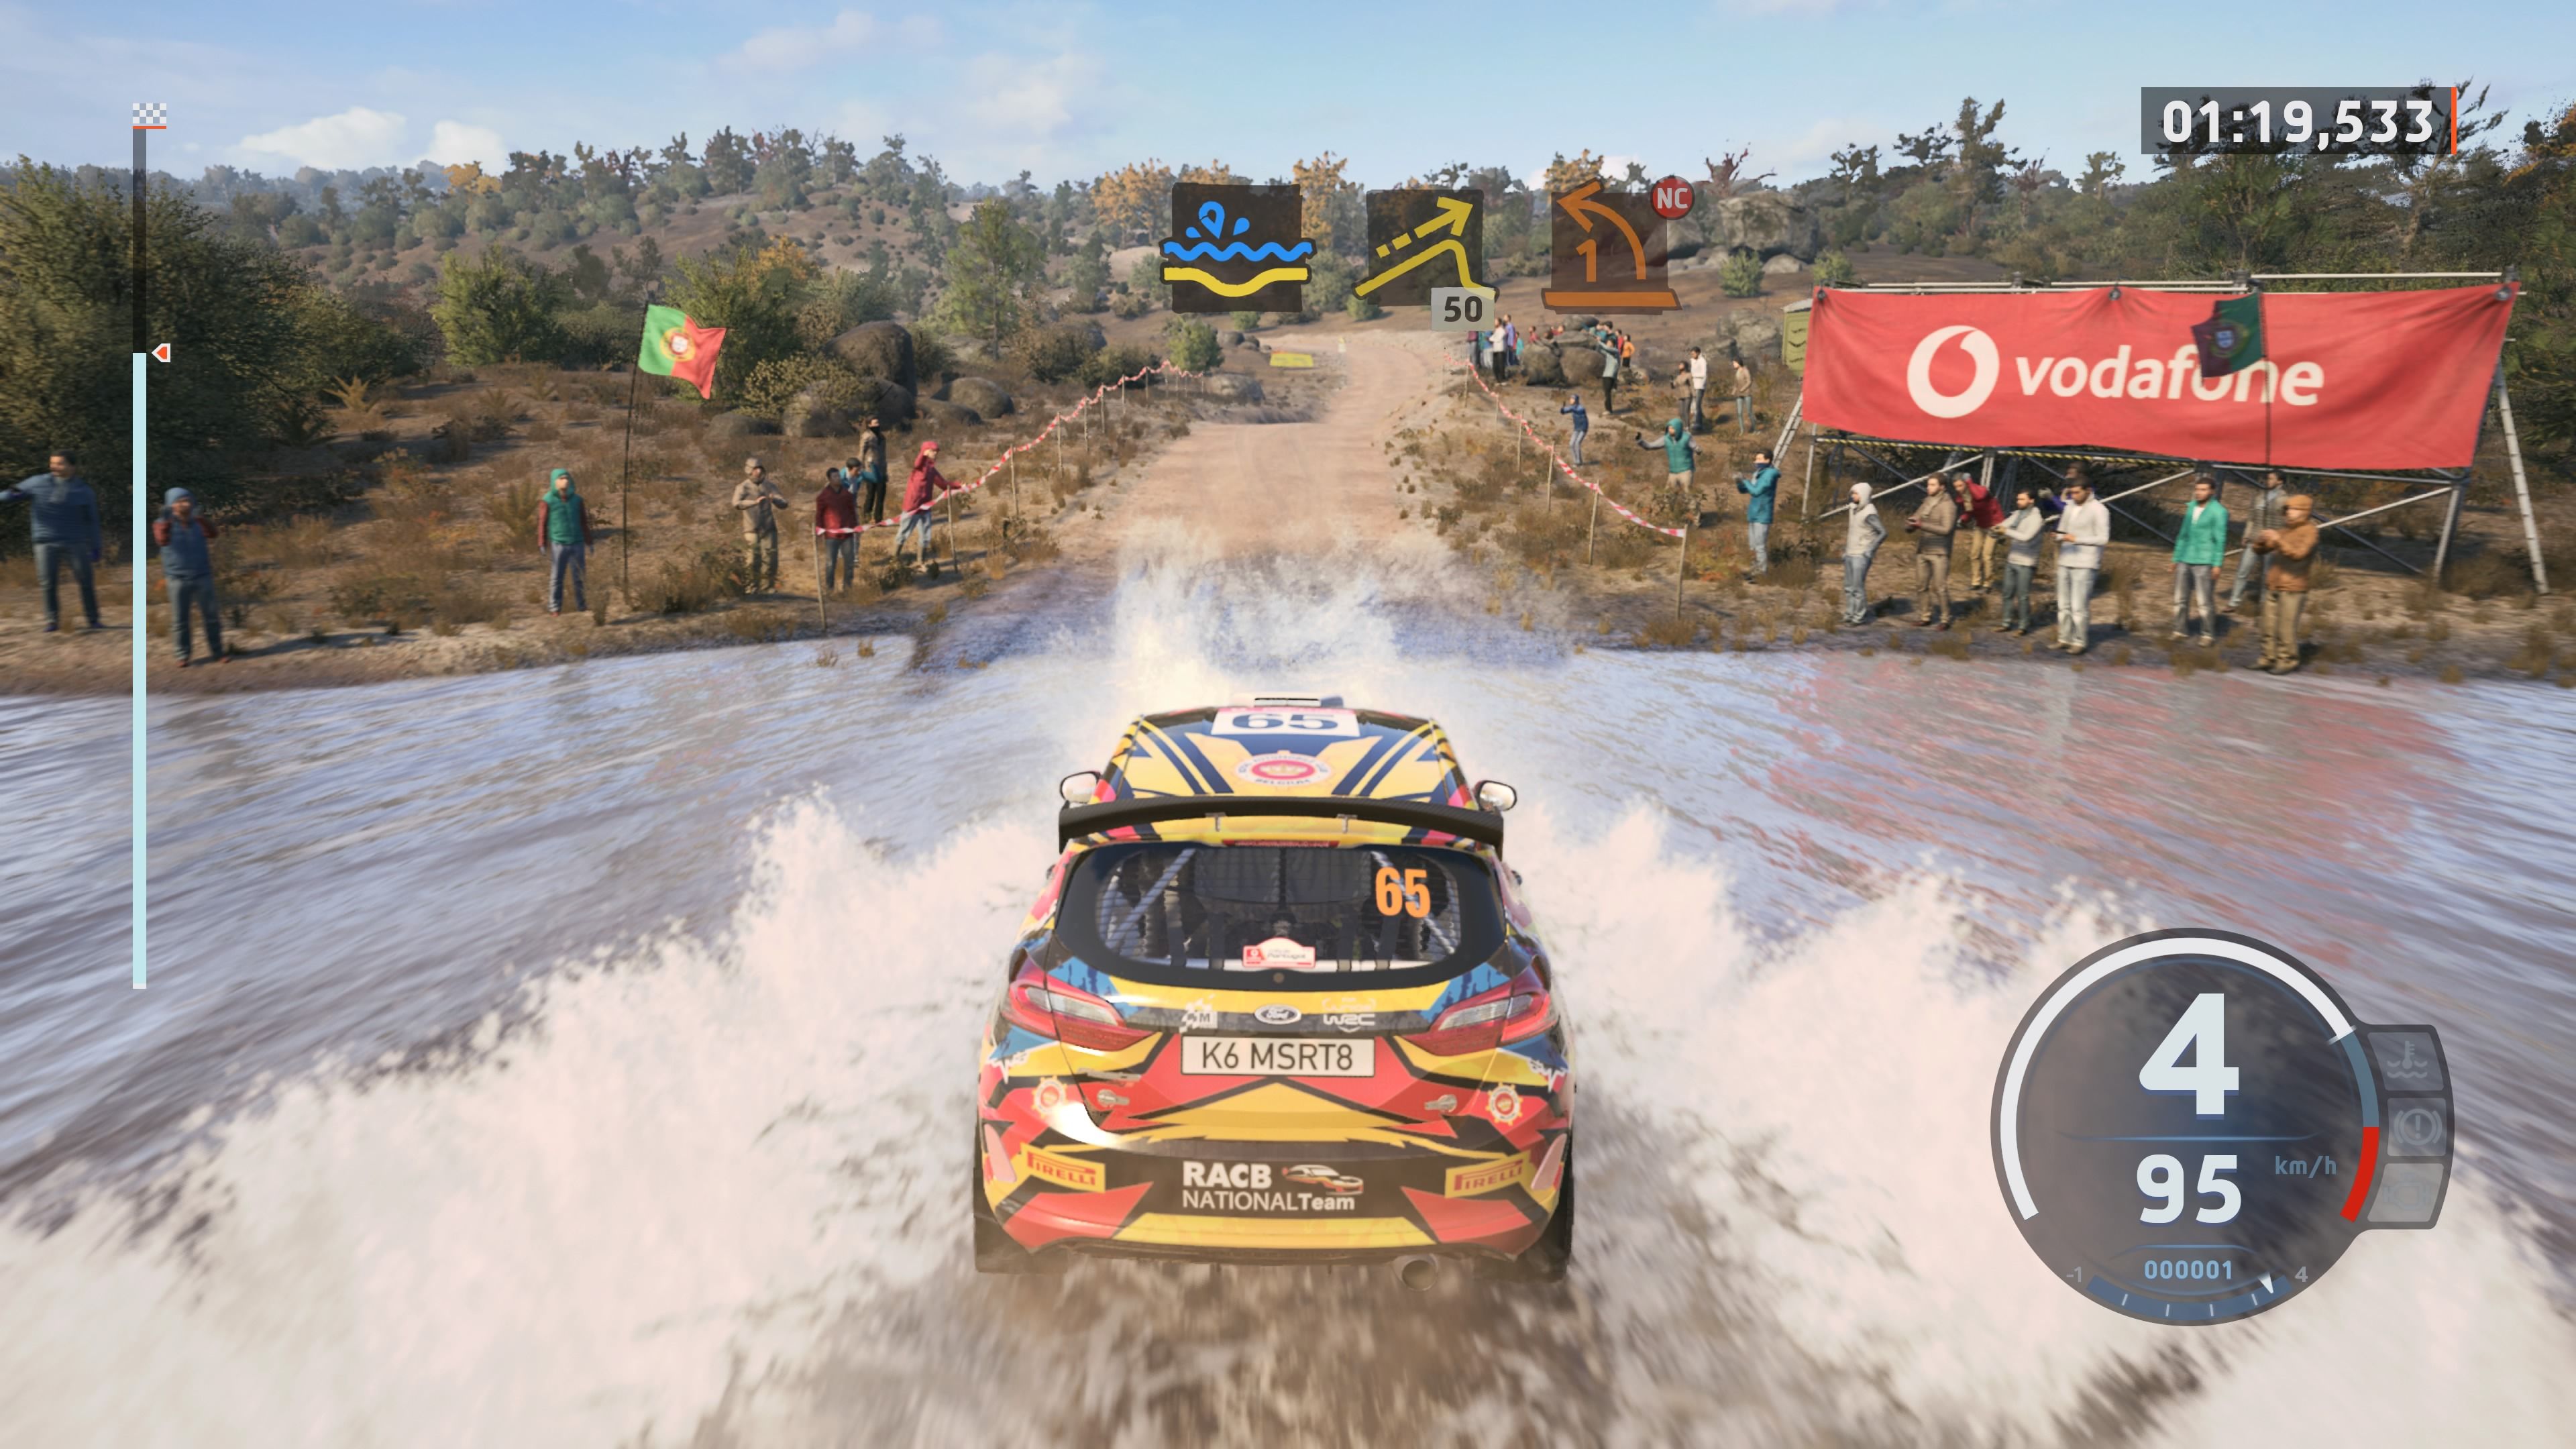 Sumérgete en la conducción real en PS5 con EA Sports WRC, a la